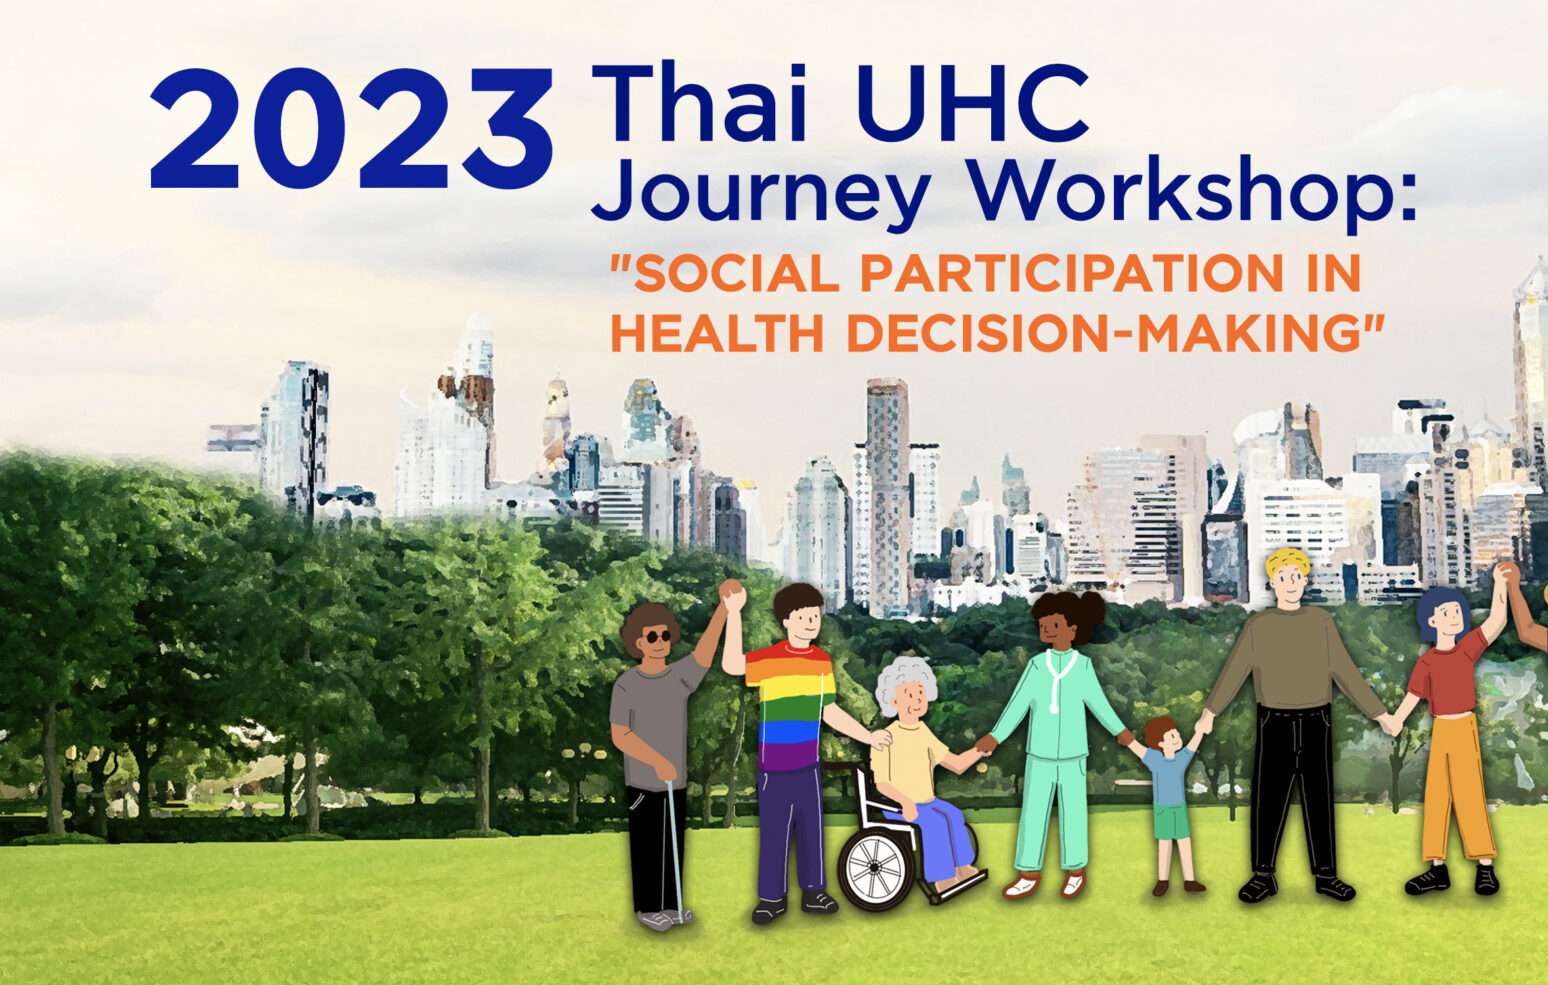 2023 Семинар "Тайский путь к UHC: социальное участие в принятии решений в области здравоохранения